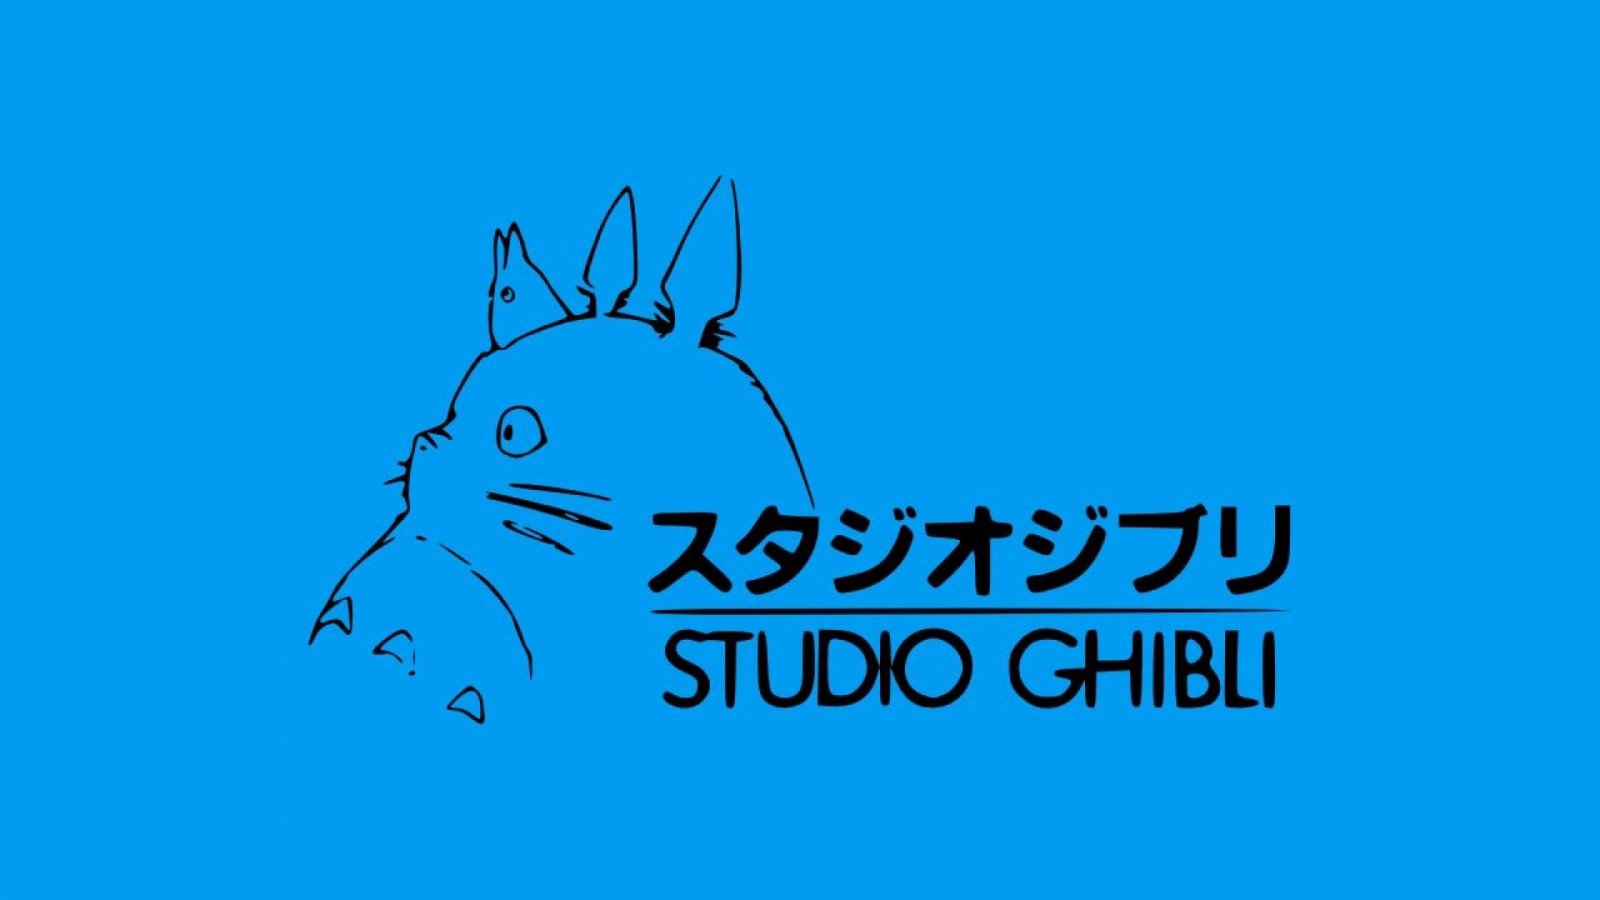 Studio Ghibli: data di uscita in Giappone del nuovo film di Hayao Miyazaki, pubblicato un artwork